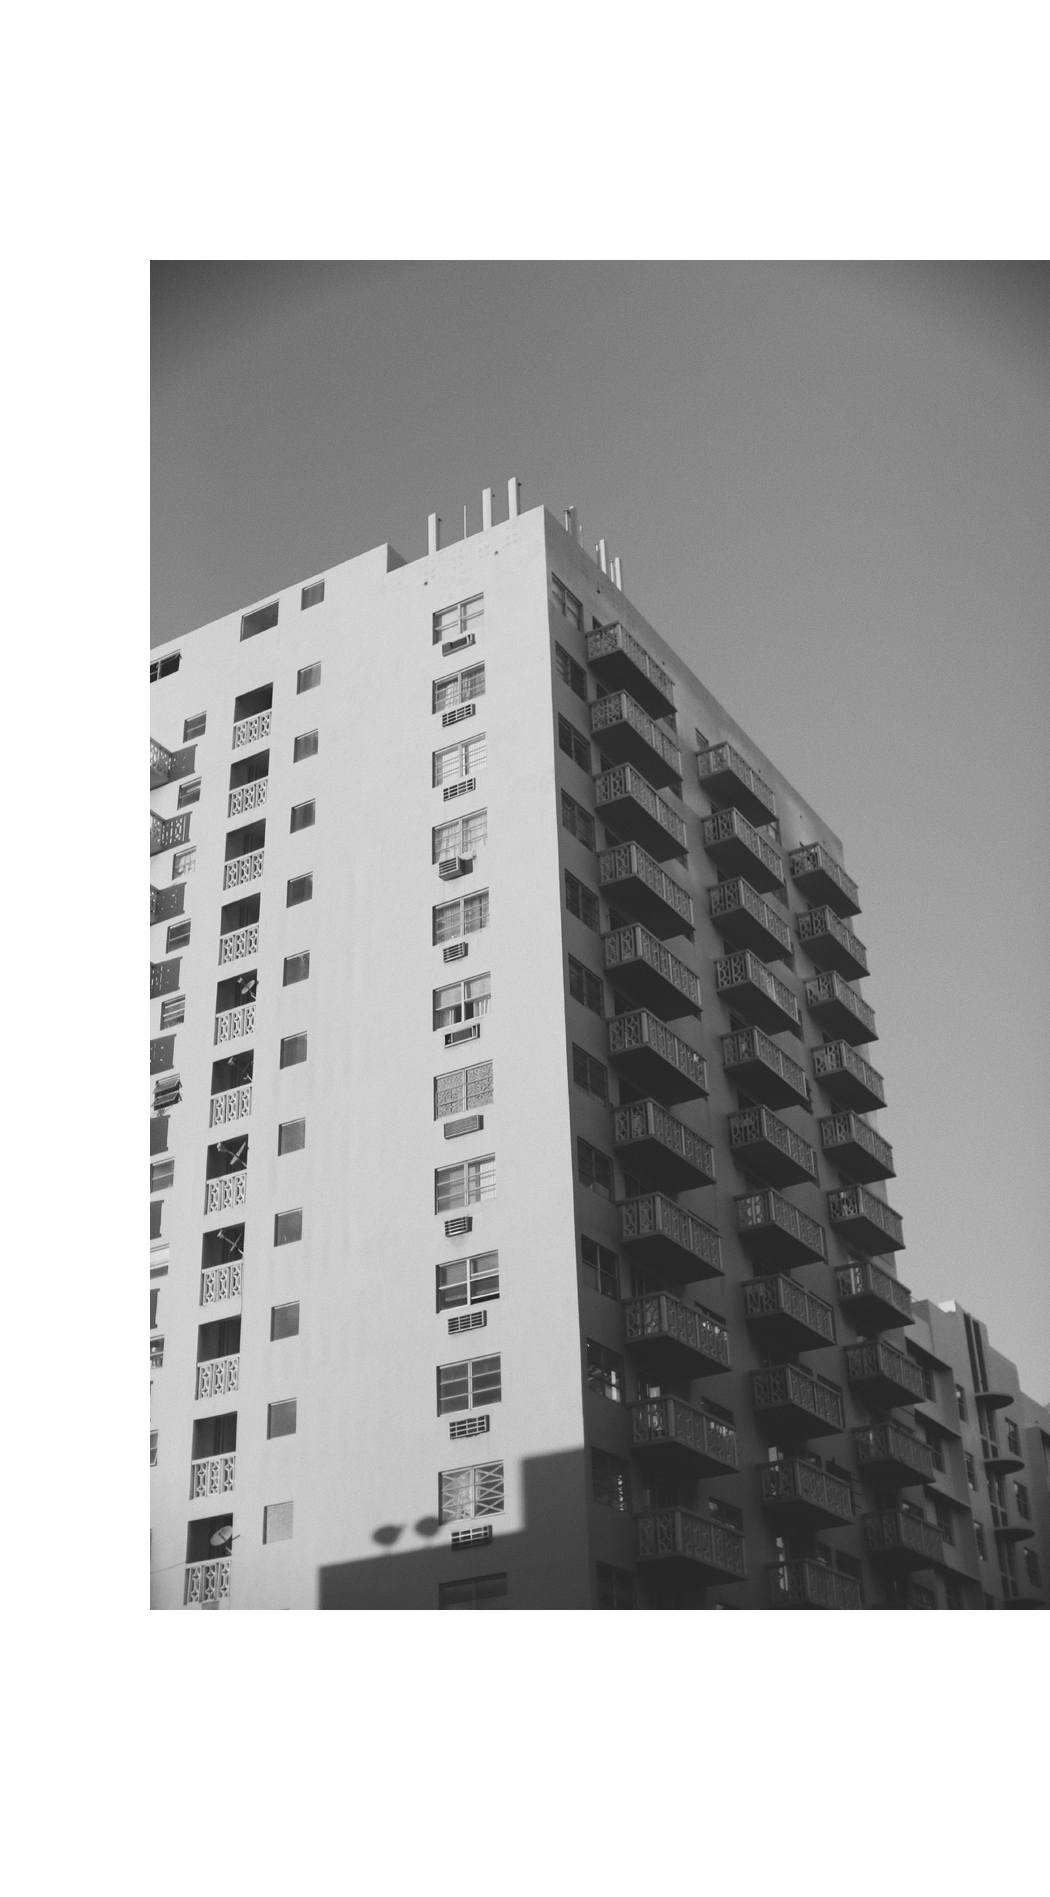 THE DASHING RIDER - Miami Architecture